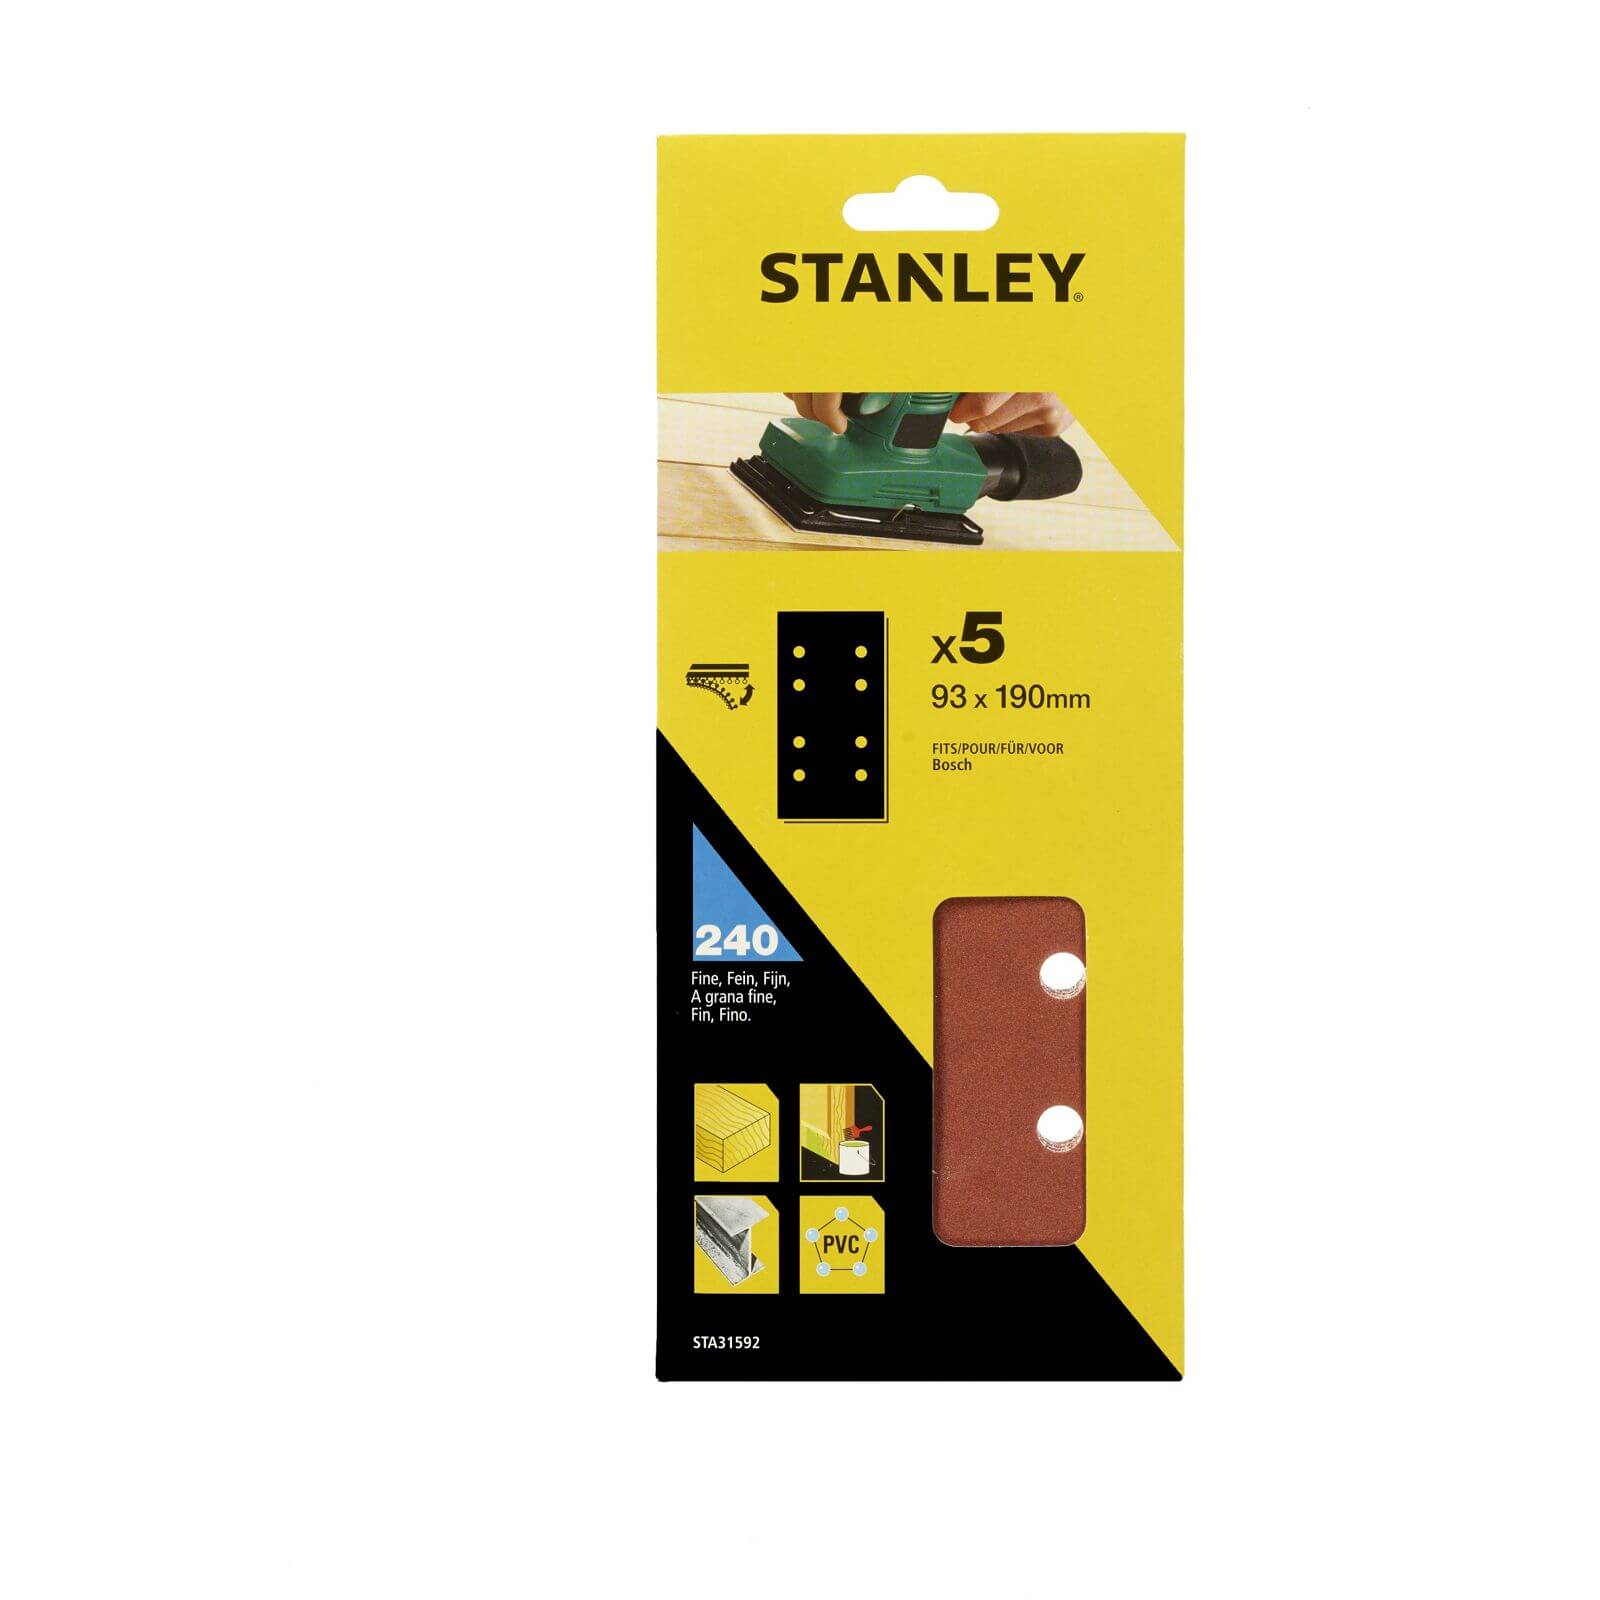 Stanley 1/3 Sheet Sander 240G Hook & Loop Sanding Sheets - STA31592-XJ